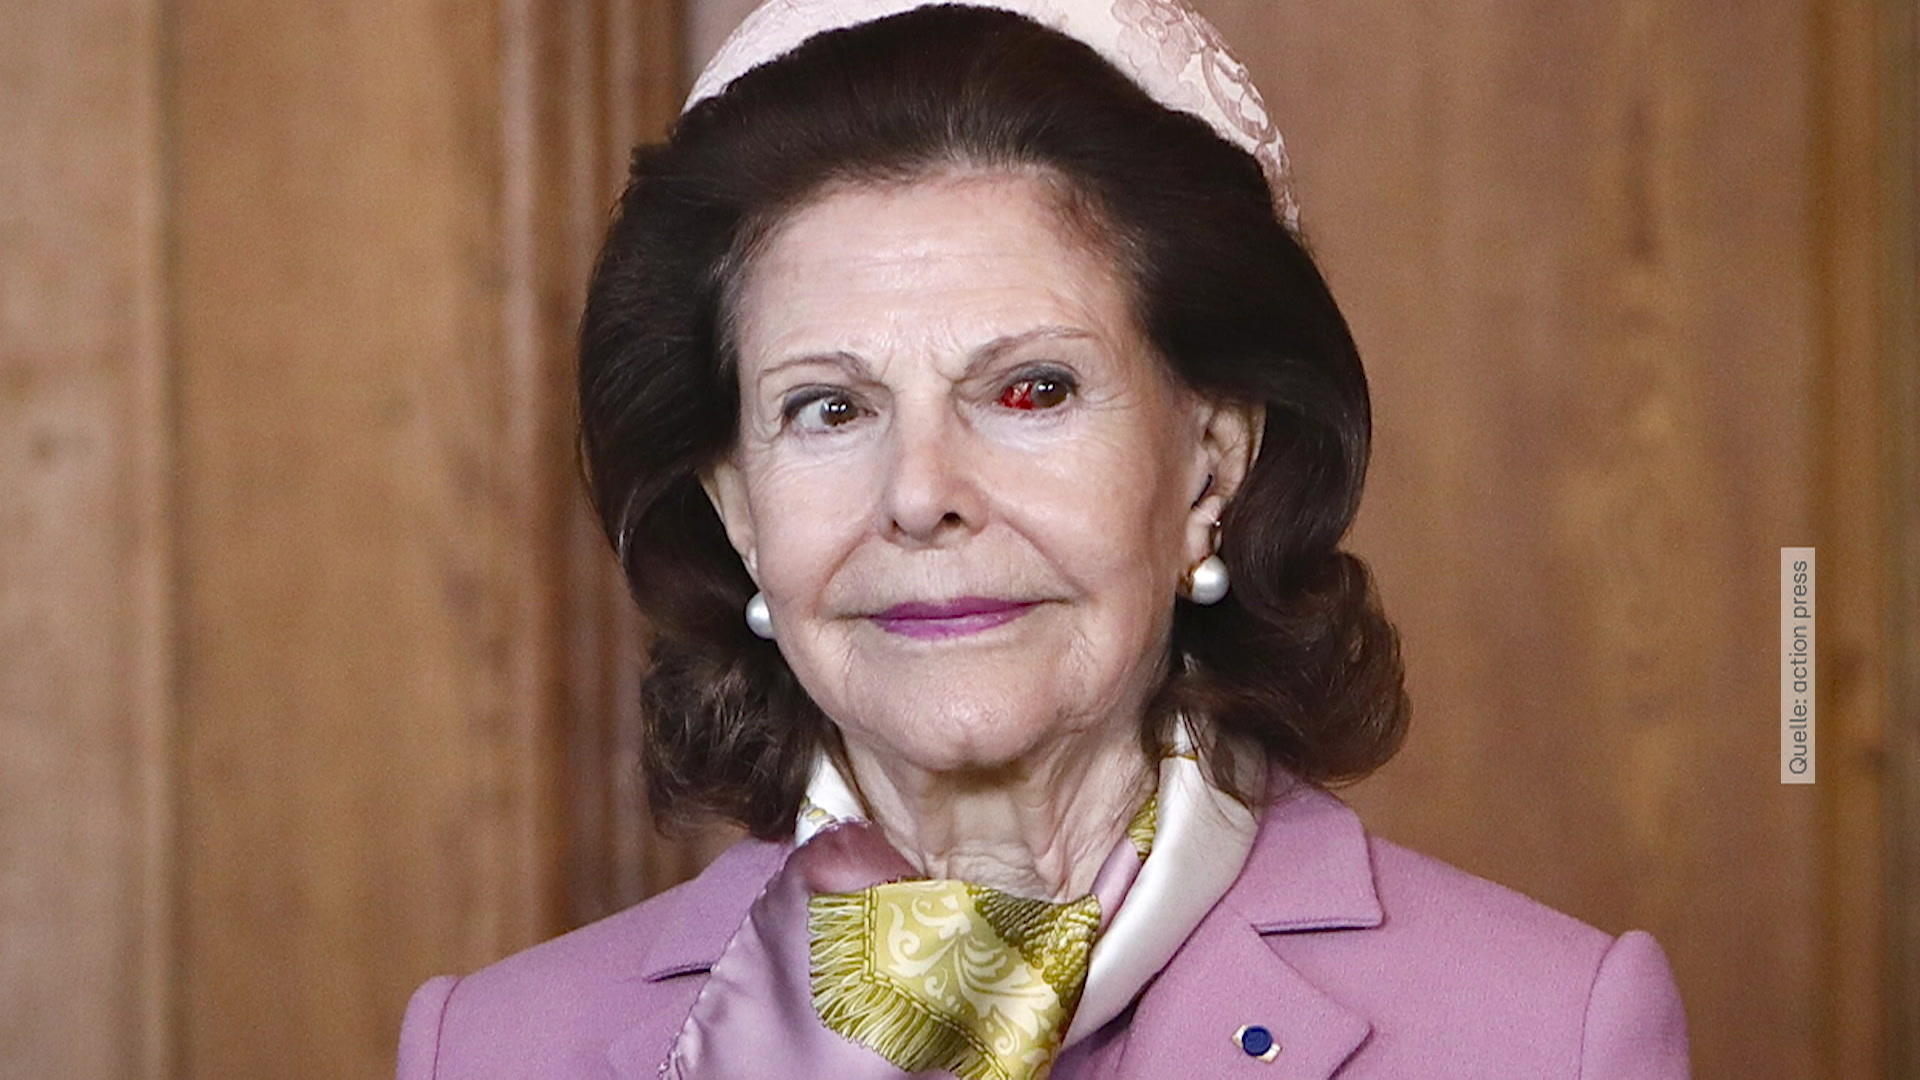 Sorge um Königin Silvia – was ist mit ihrem Auge passiert? Schockierender Moment während des finnischen Staatsbesuchs